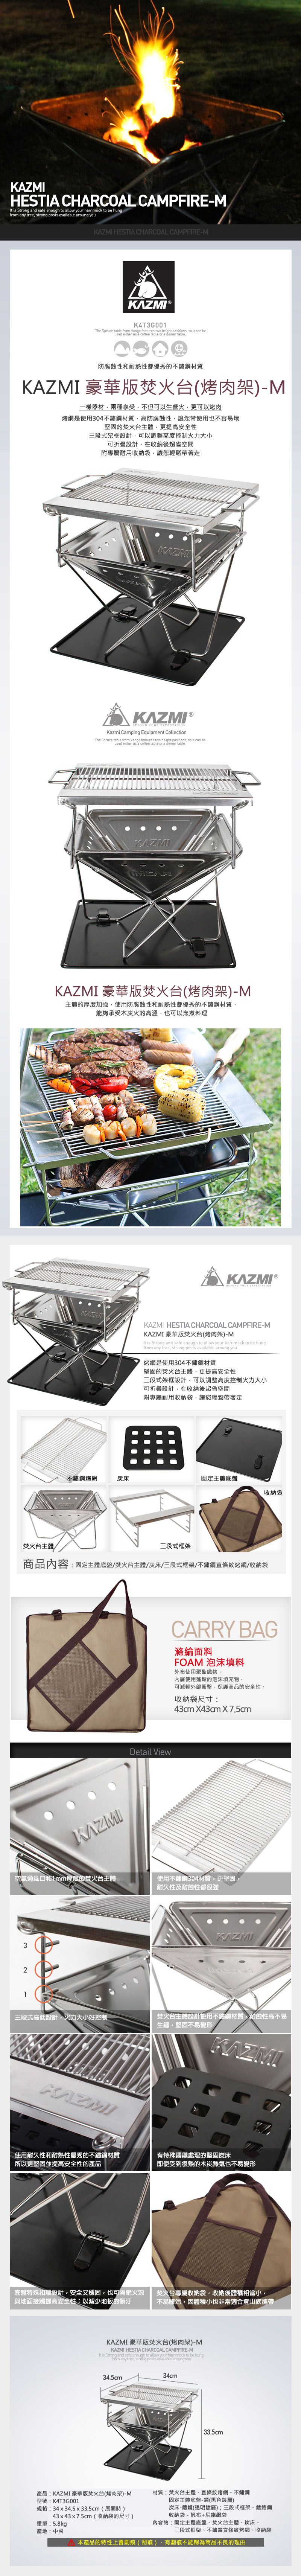 【山野賣客】 KAZMI 豪華版焚火台(烤肉架) M K4T3G001